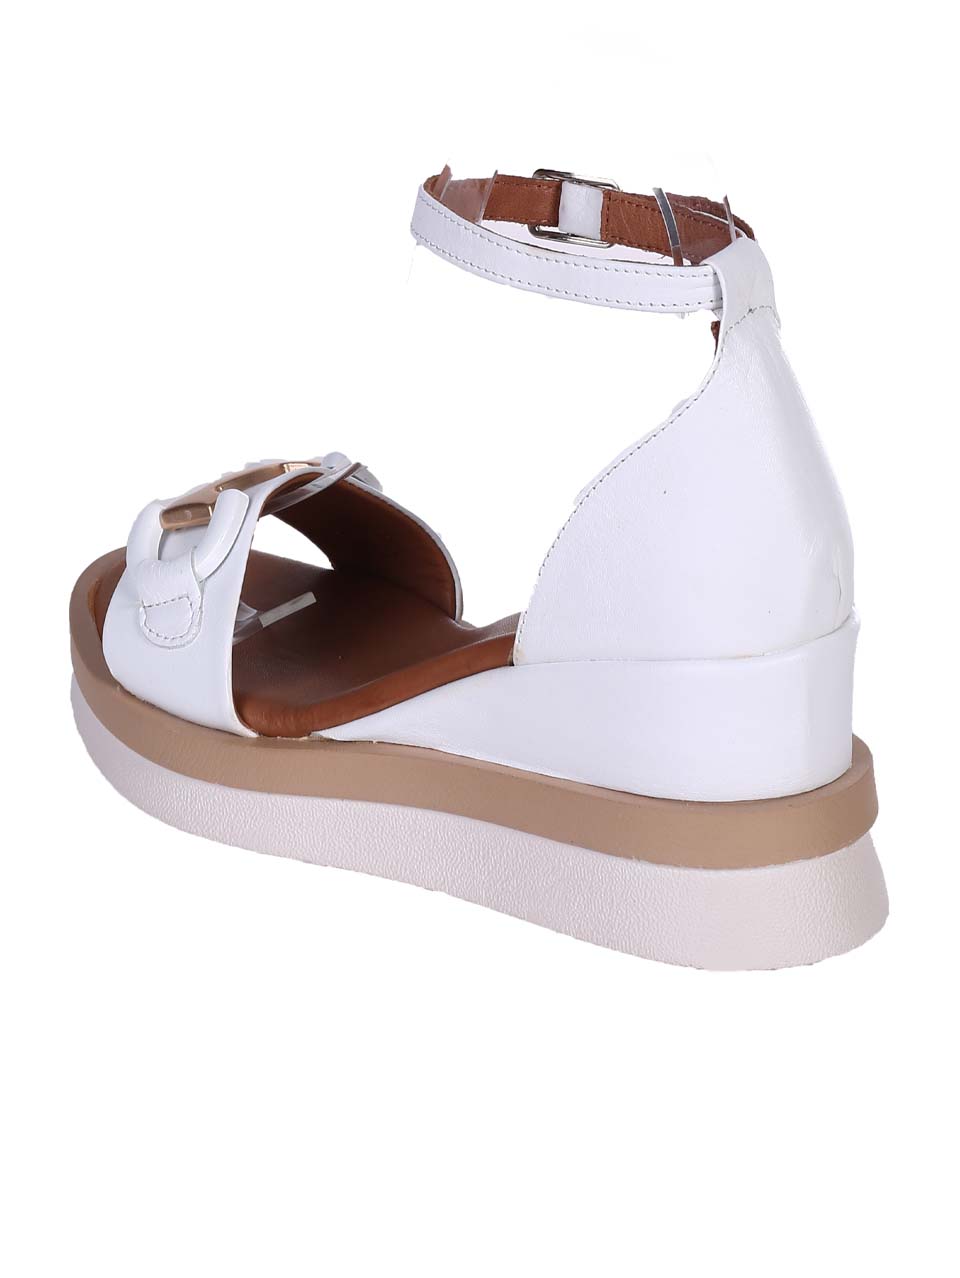 Ежедневни дамски сандали на платформа от естествена кожа в бяло 4AT-24344 white